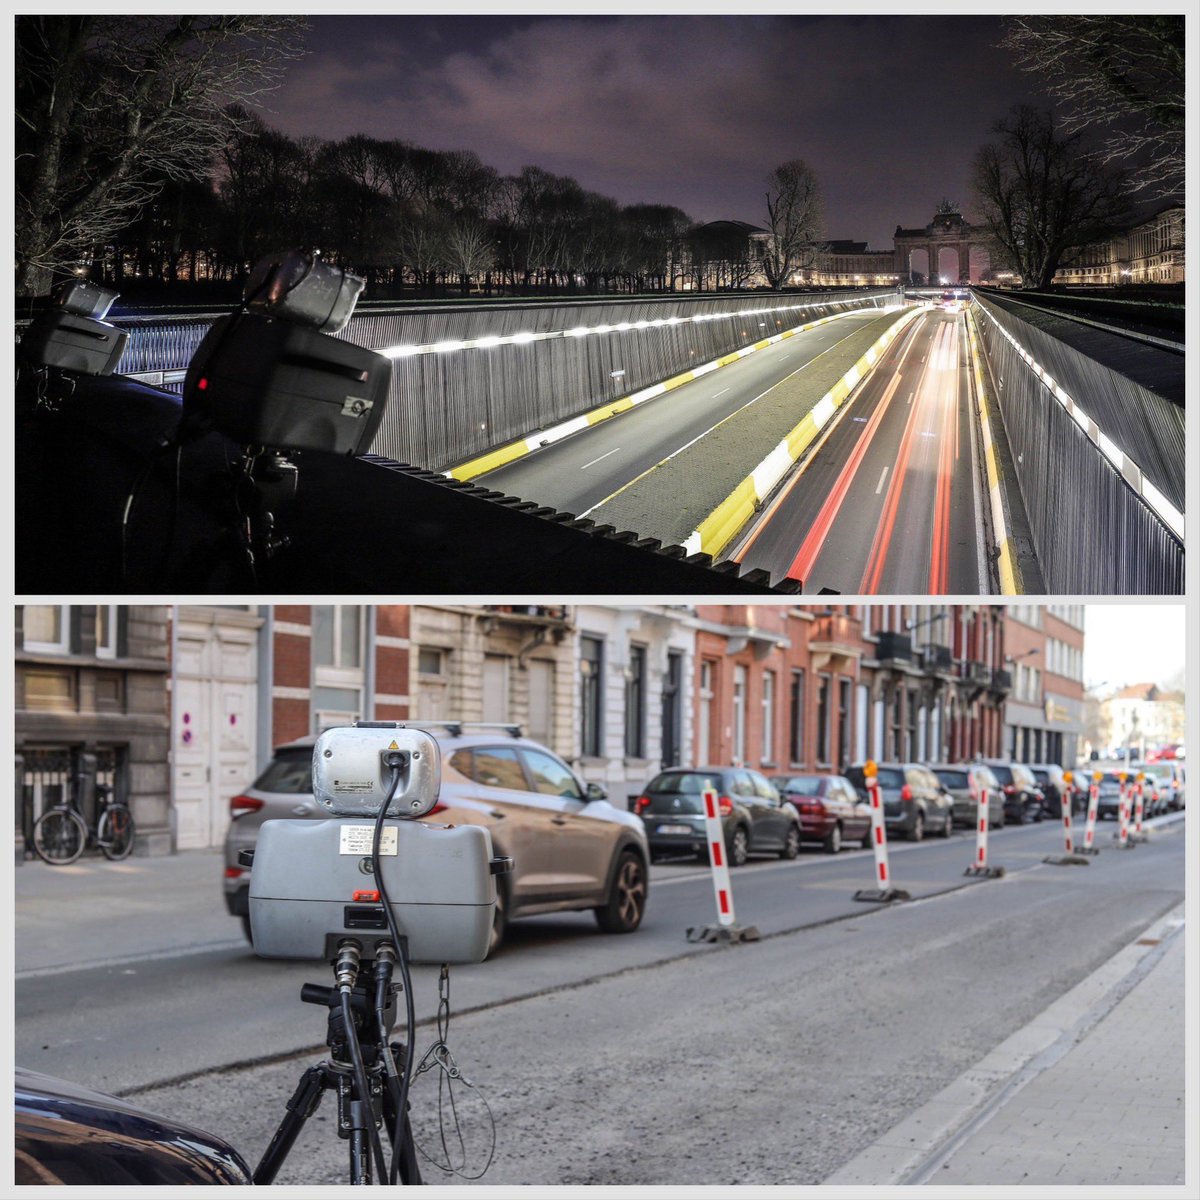 #Speedmarathon : « Ralentissez, vous êtes filmés » Vendredi, @zpz_polbru a lutté intensivement contre la vitesse excessive pendant 24 heures à #Bruxelles et #Ixelles. Contrôles mobiles et fixes : 164.204 véhicules contrôlés 👉 Résultat : 633 procès-verbaux 👮🏼📸👮🏻‍♂️